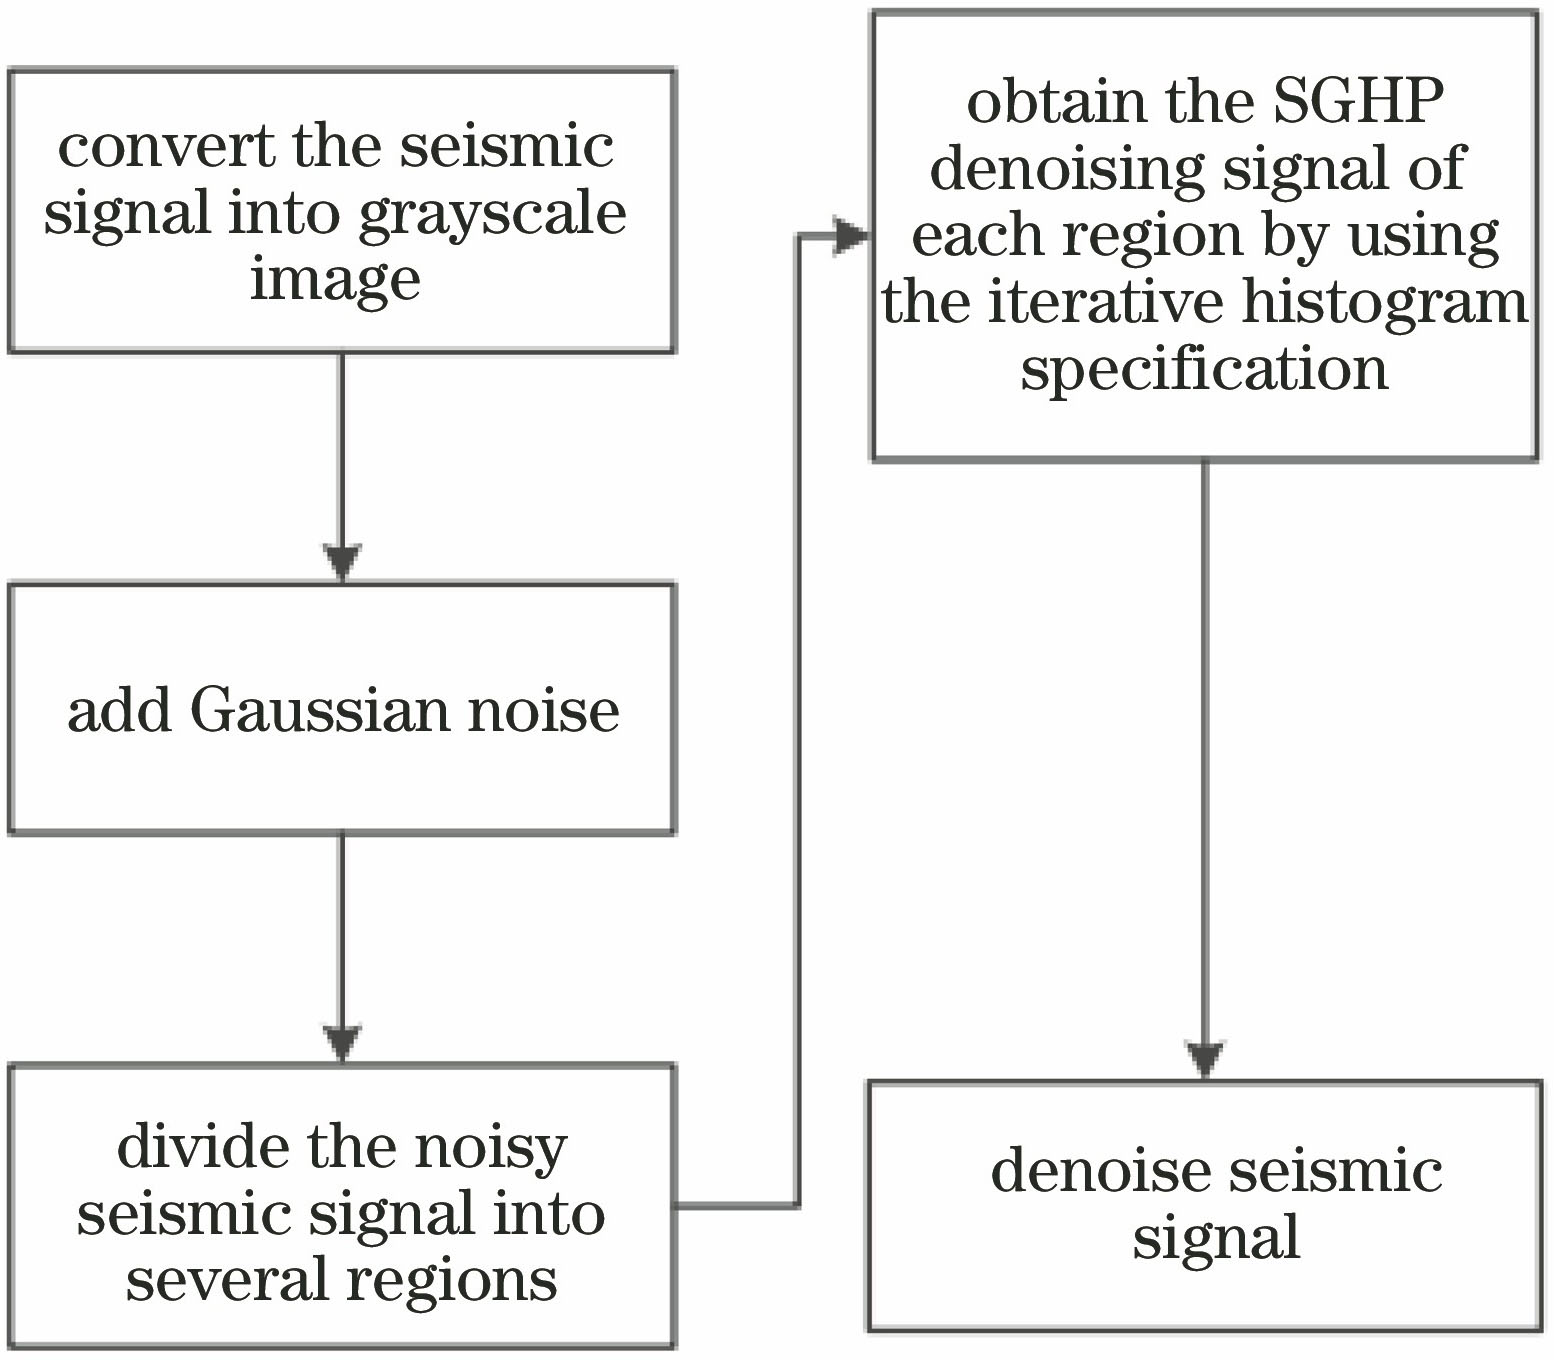 Flow chart of denoising based on SGHP algorithm